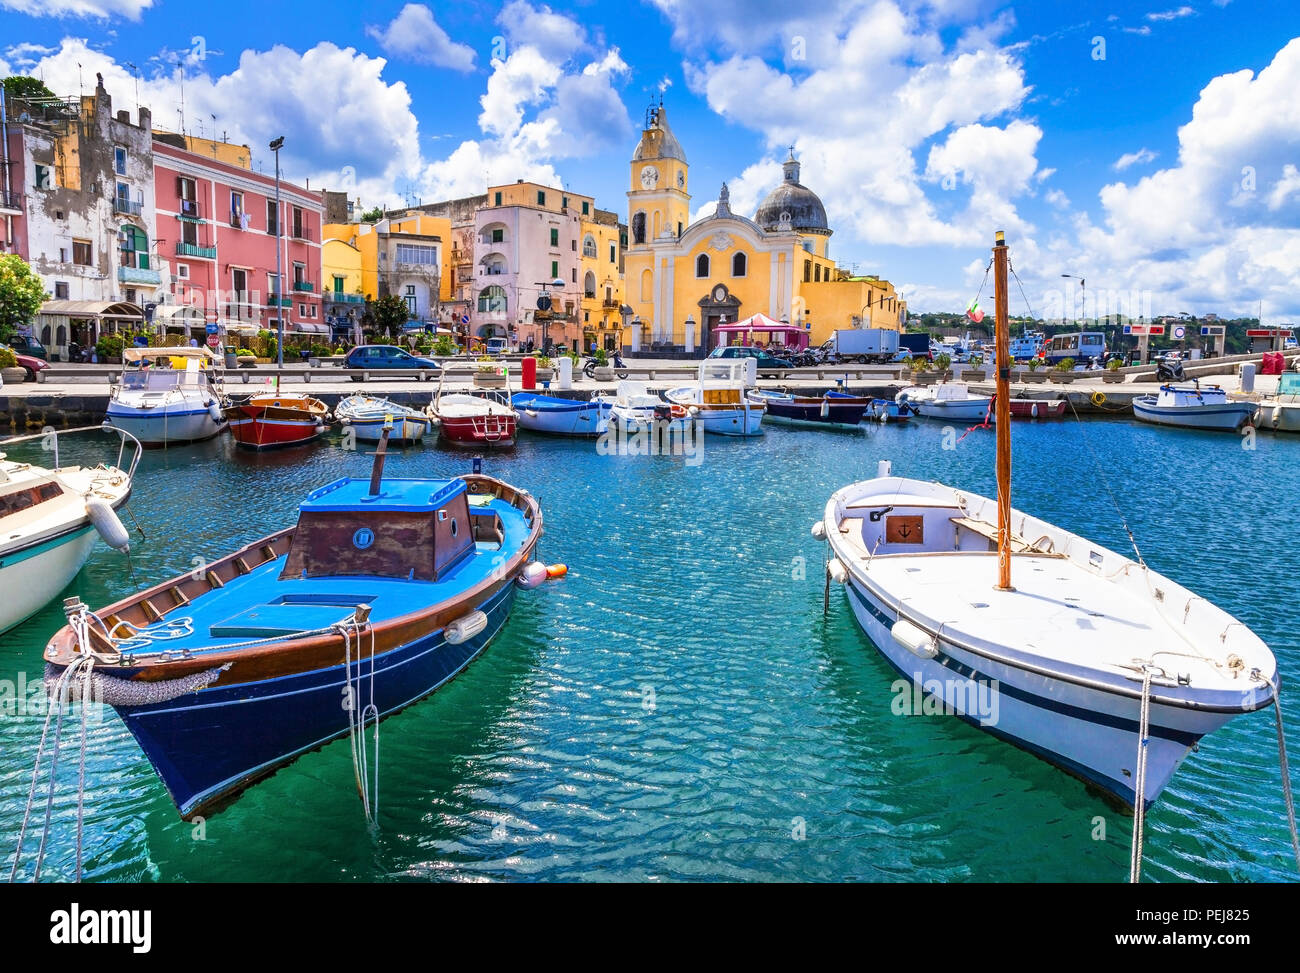 Wunderschöne Insel Procida, mit Blick auf die traditionellen Fischerboote und bunten Häusern, Kampanien, Italien. Stockfoto